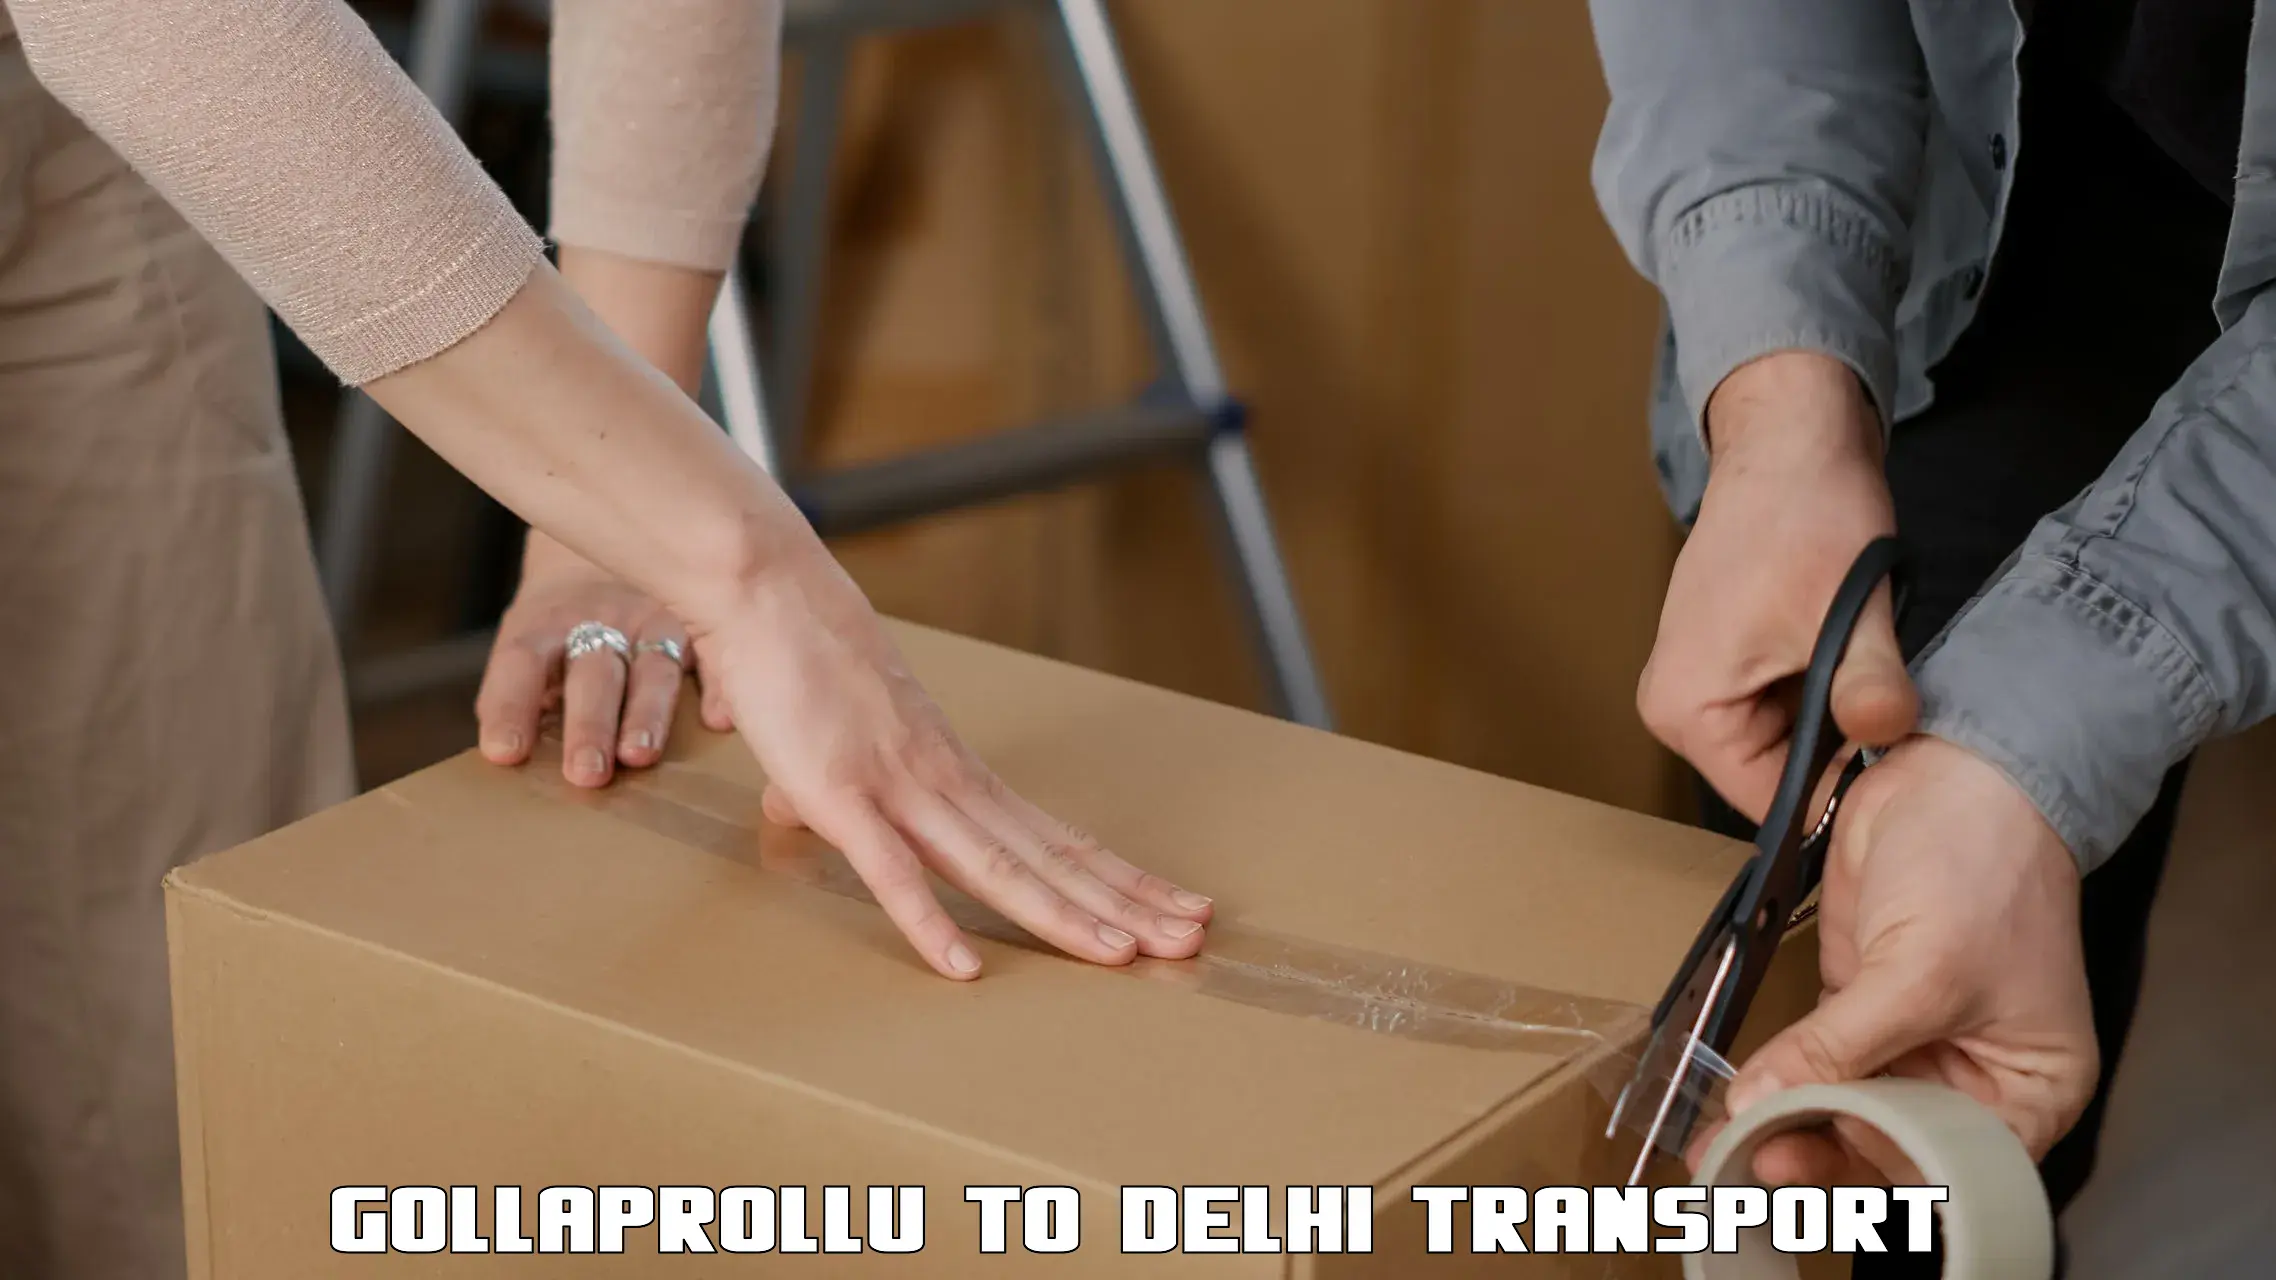 Material transport services Gollaprollu to NIT Delhi